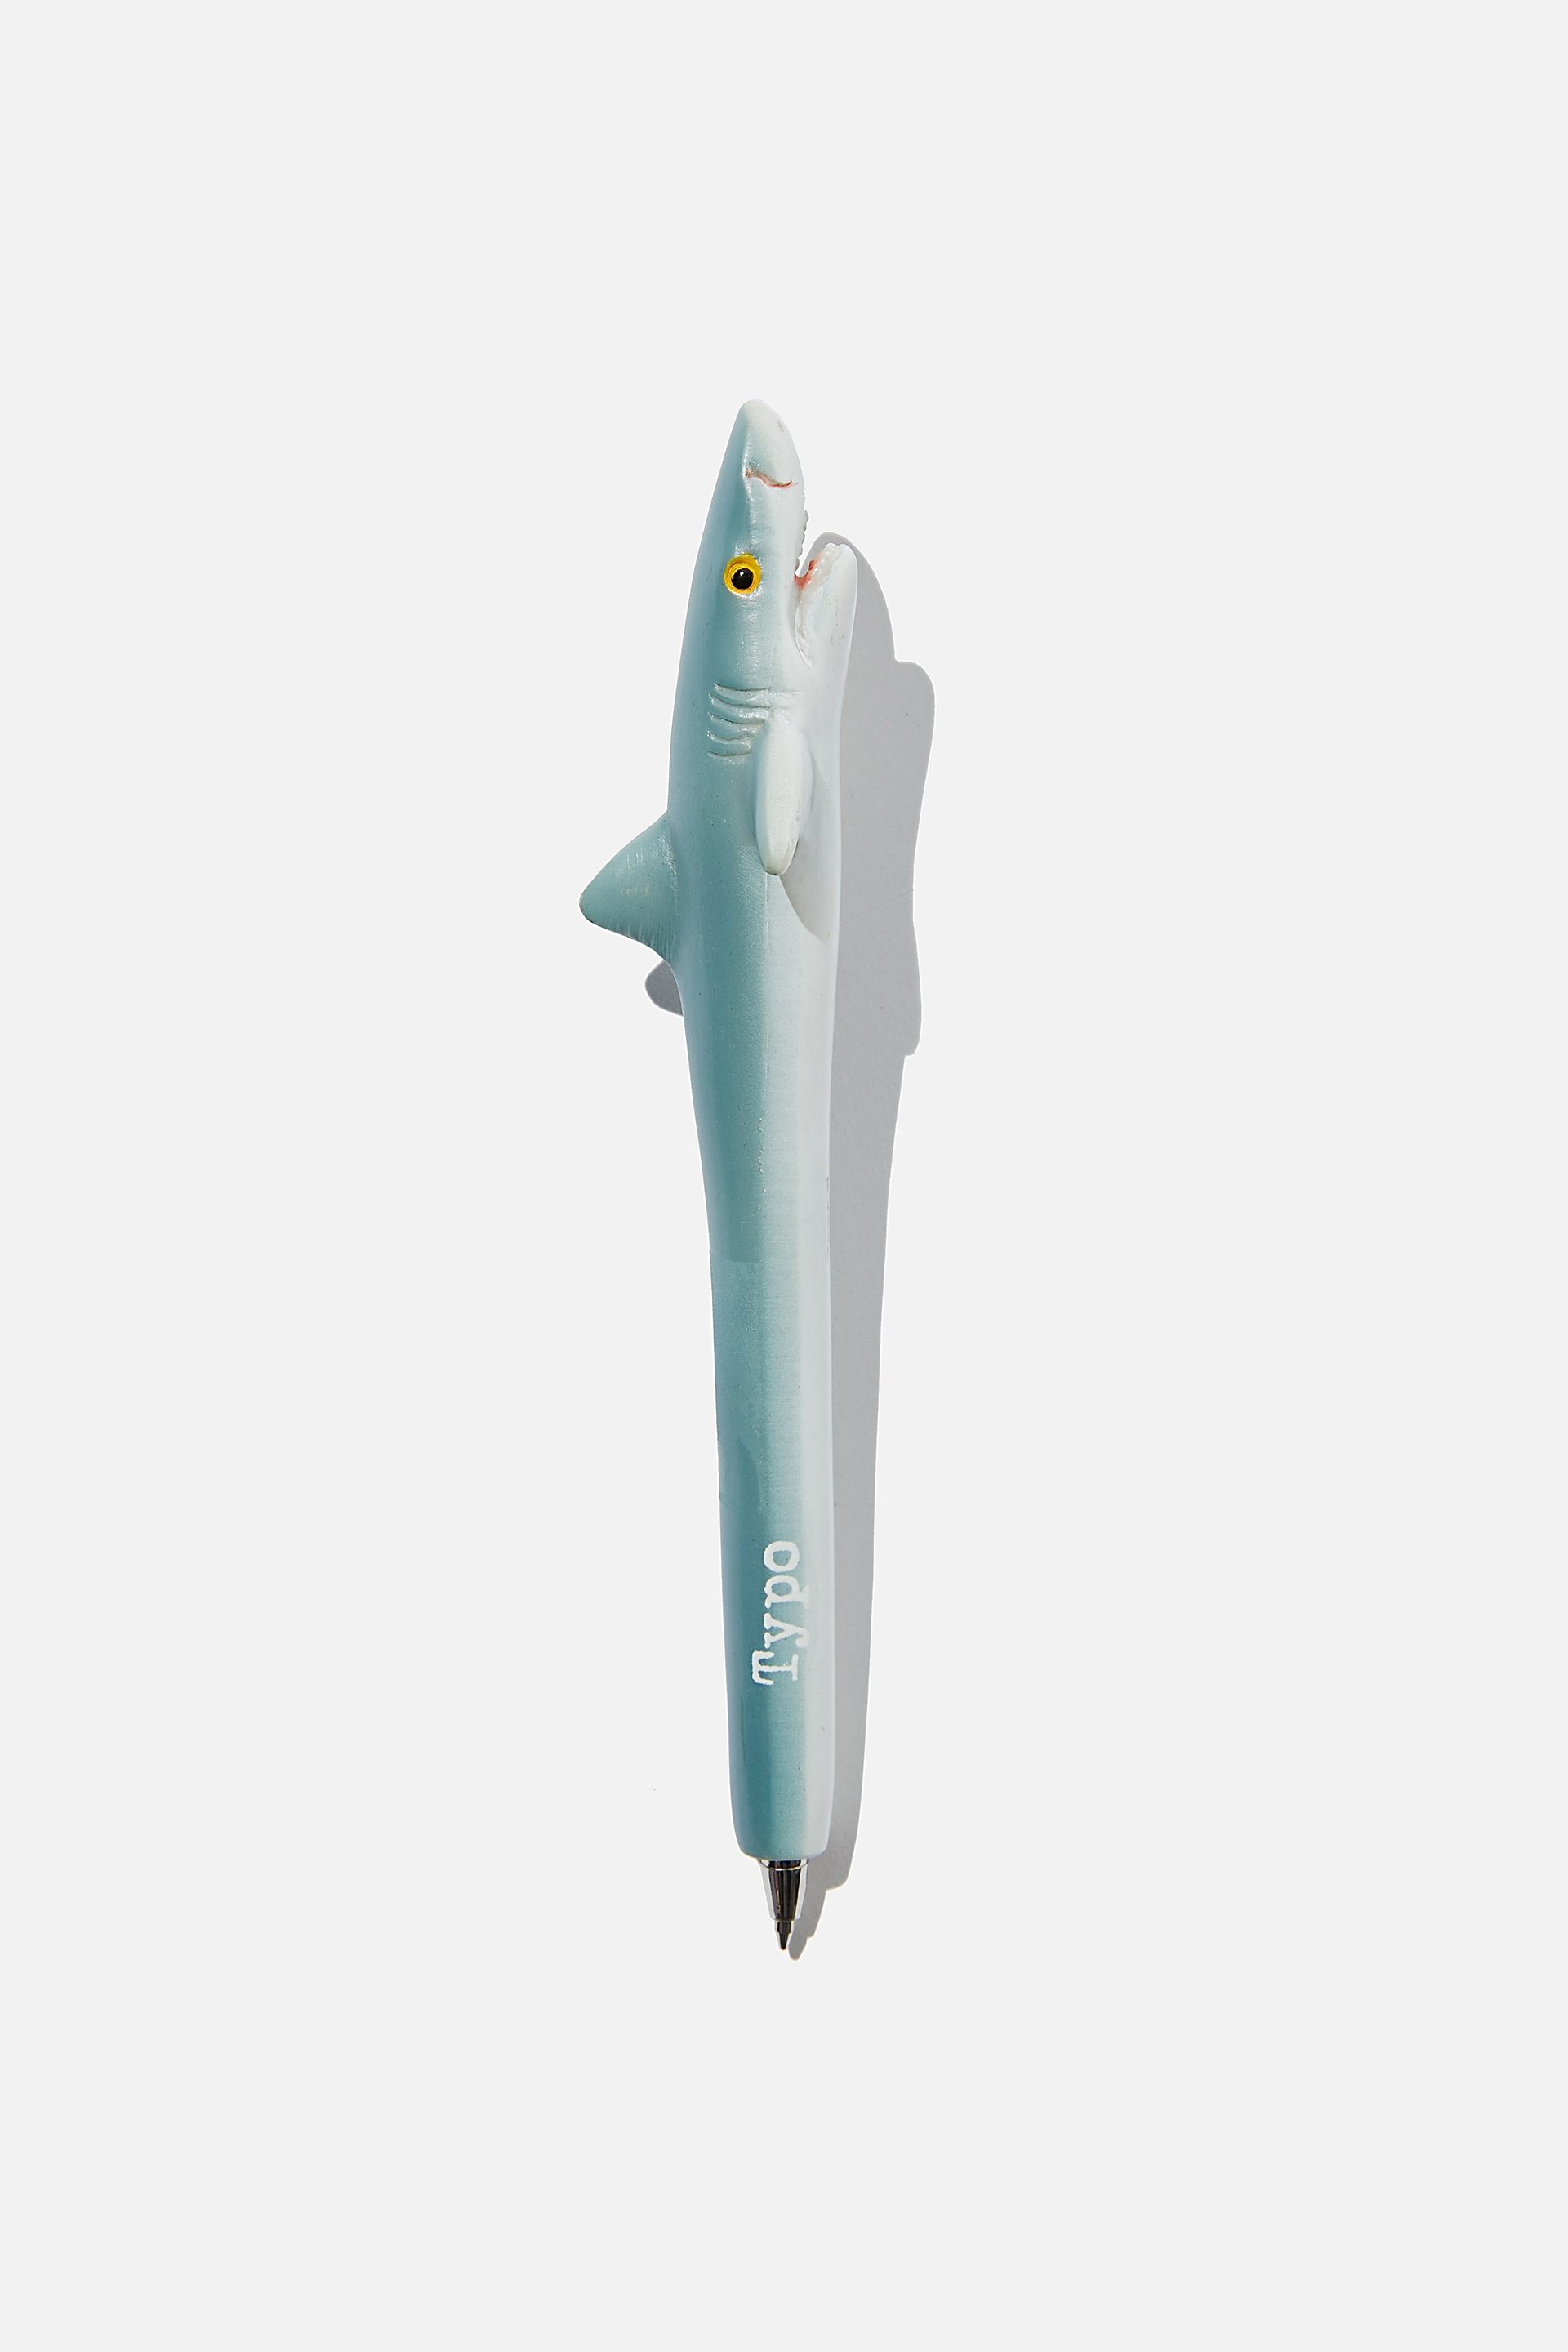 Typo - The Novelty Pen - Bruce the shark